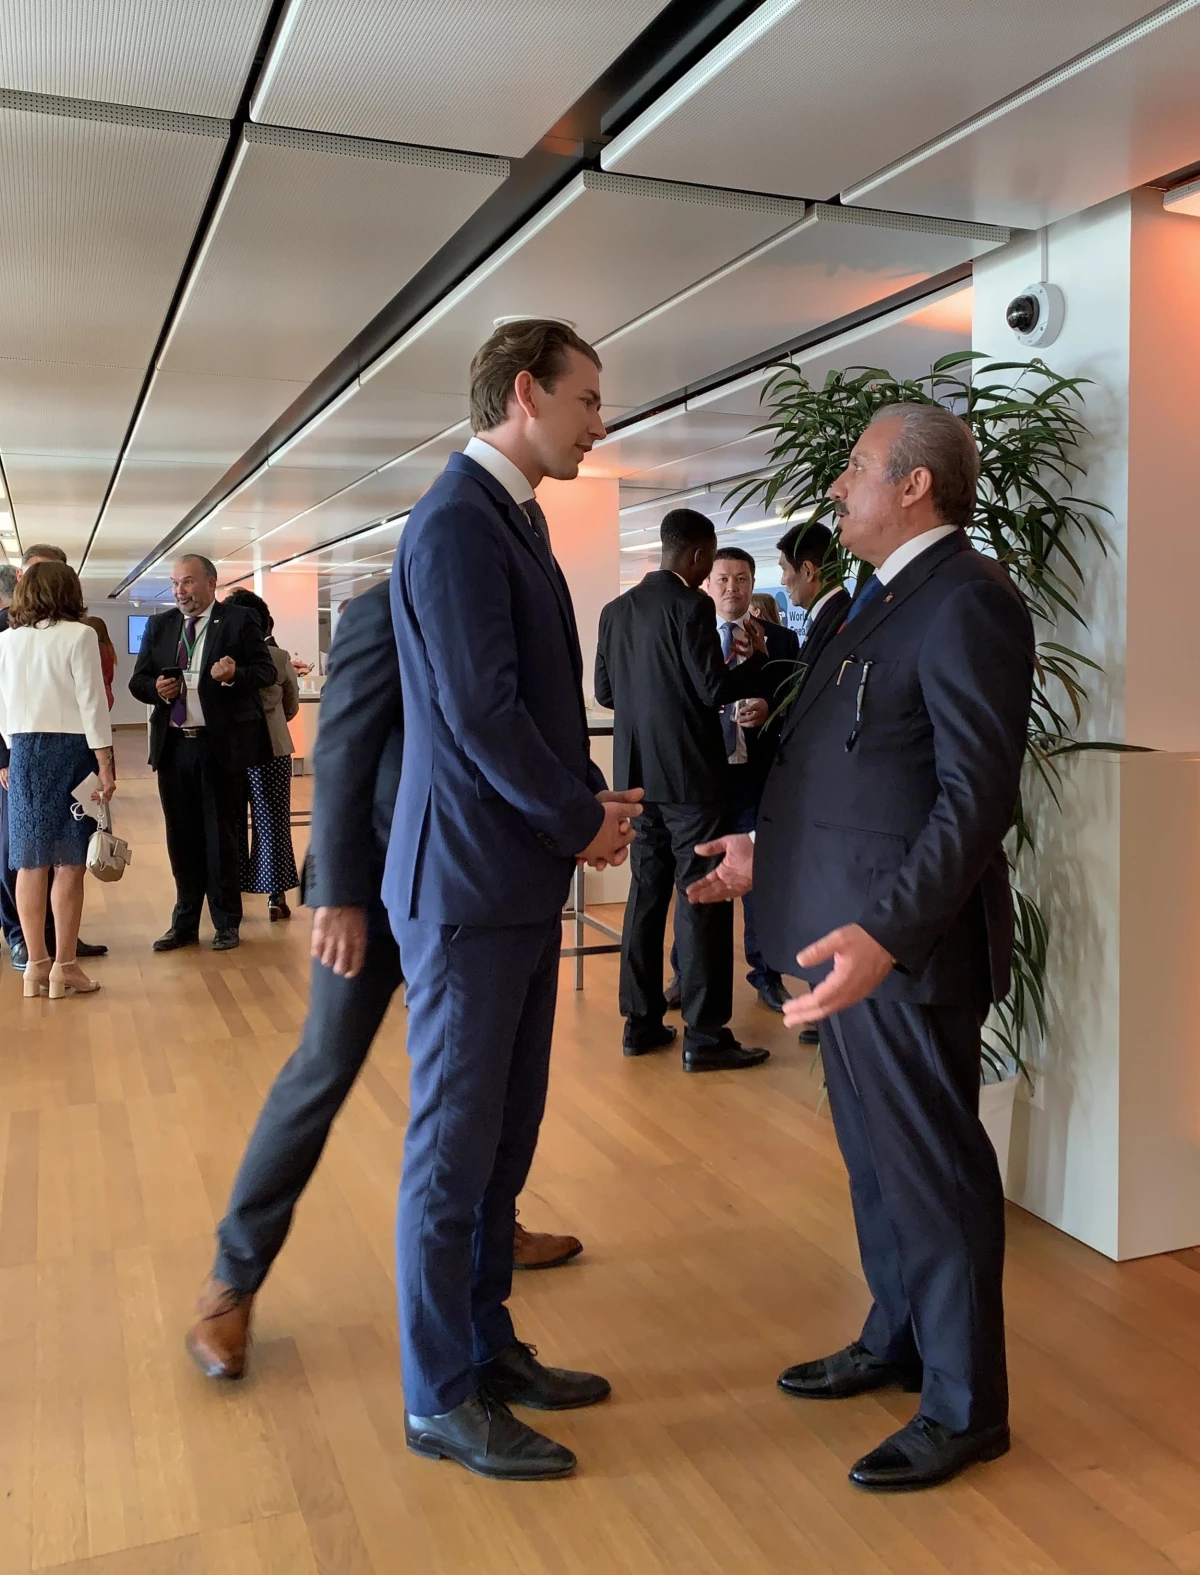 TBMM Başkanı Şentop Avusturya Başbakanı Sebastian Kurz ile görüştü